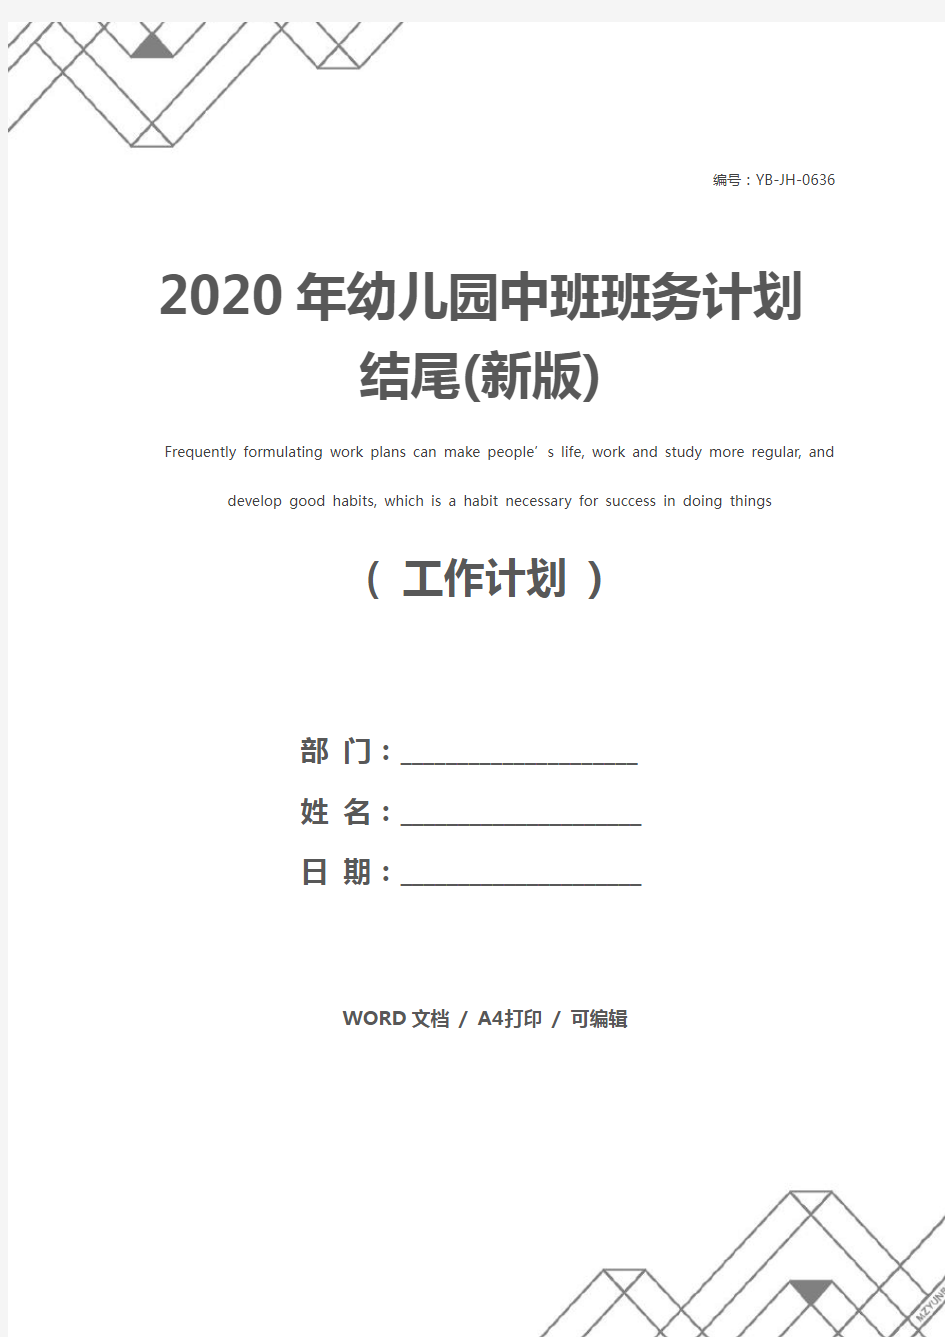 2020年幼儿园中班班务计划结尾(新版)